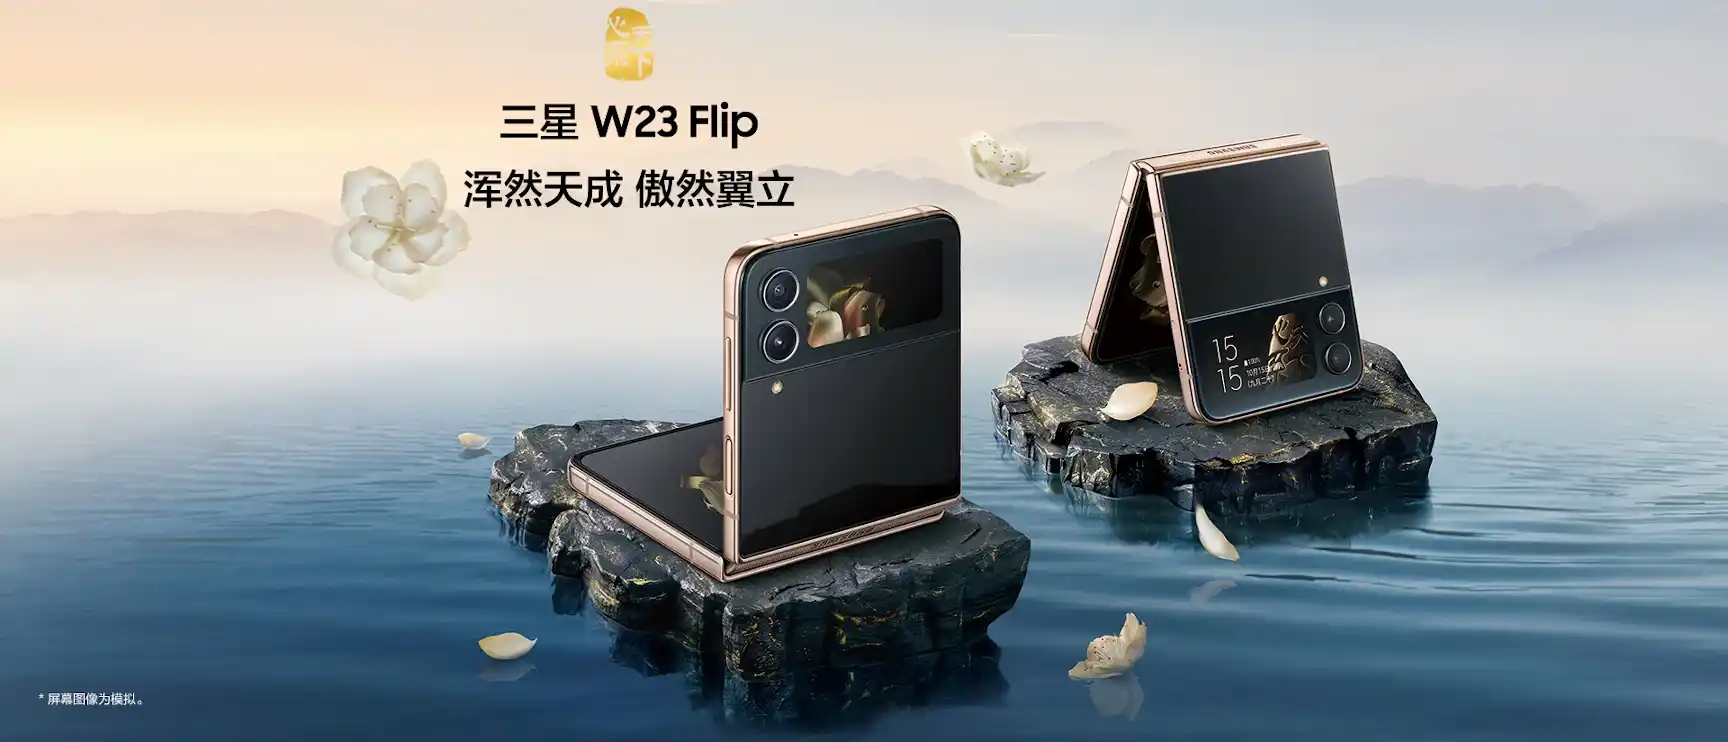 Samsung W23 Flip